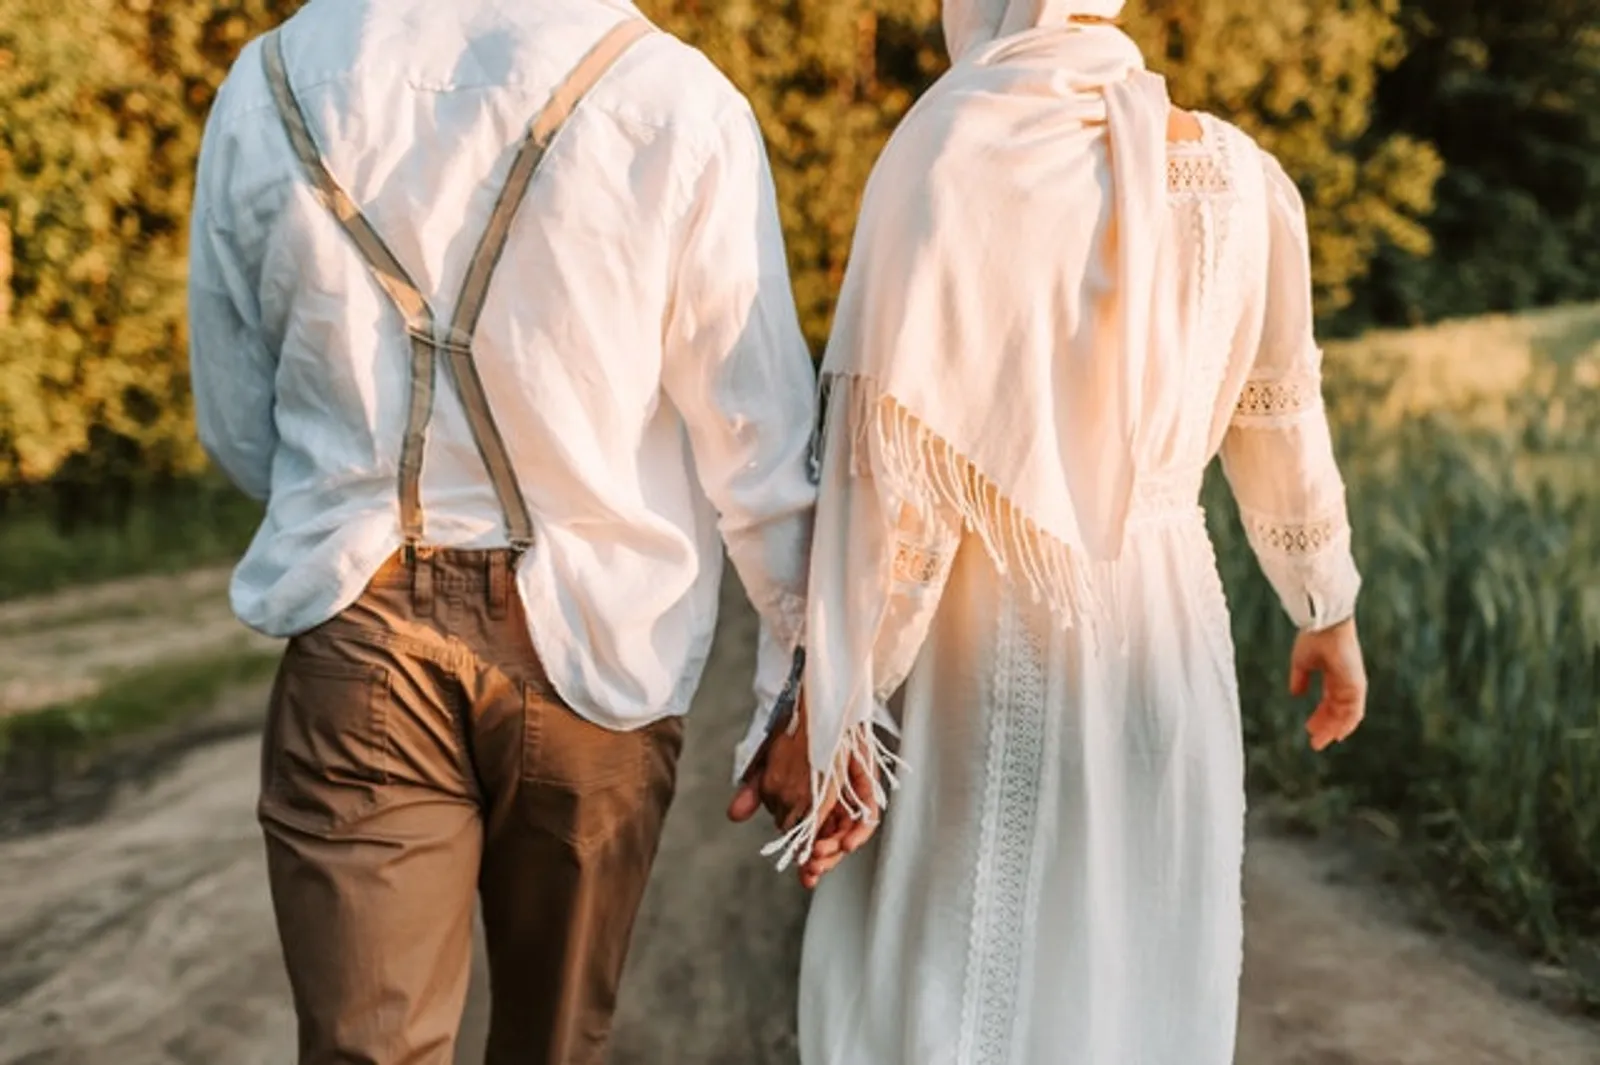 Ketika Suami Lakukan KDRT, Haruskah Istri Diam? Ini Menurut Islam